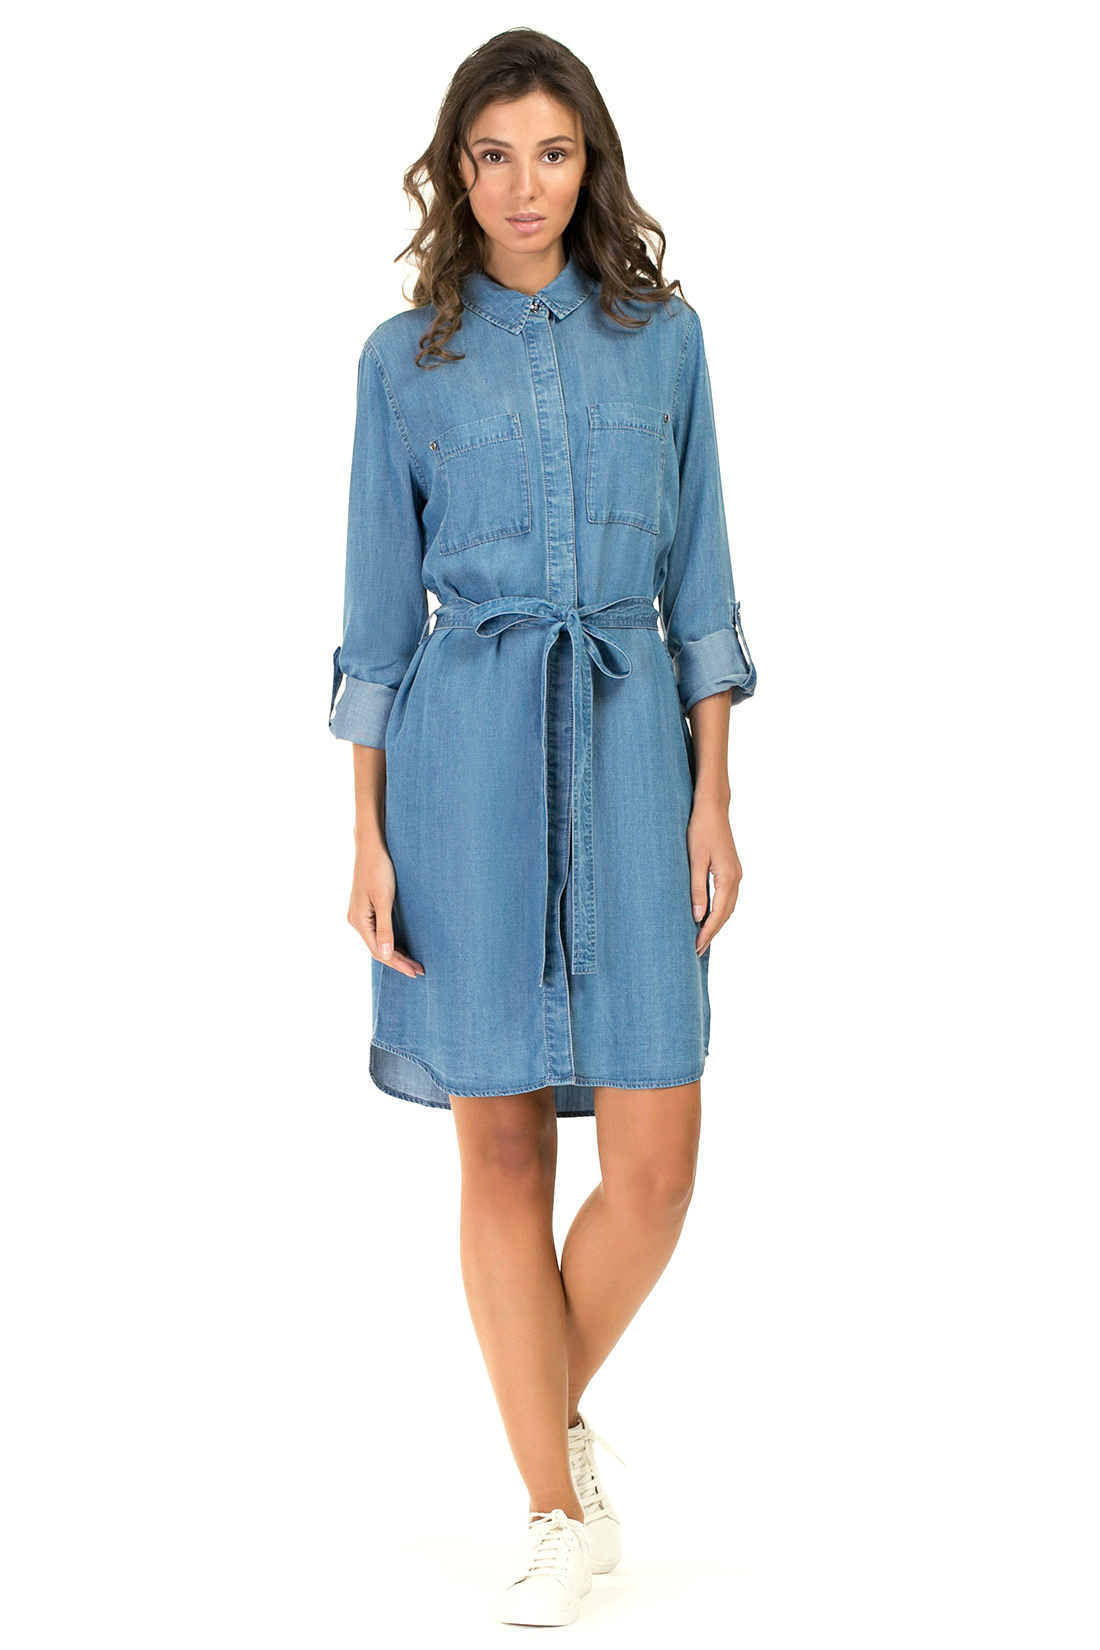 Платье-рубашка из денима (арт. baon B457088), размер L, цвет blue denim#голубой Платье-рубашка из денима (арт. baon B457088) - фото 1